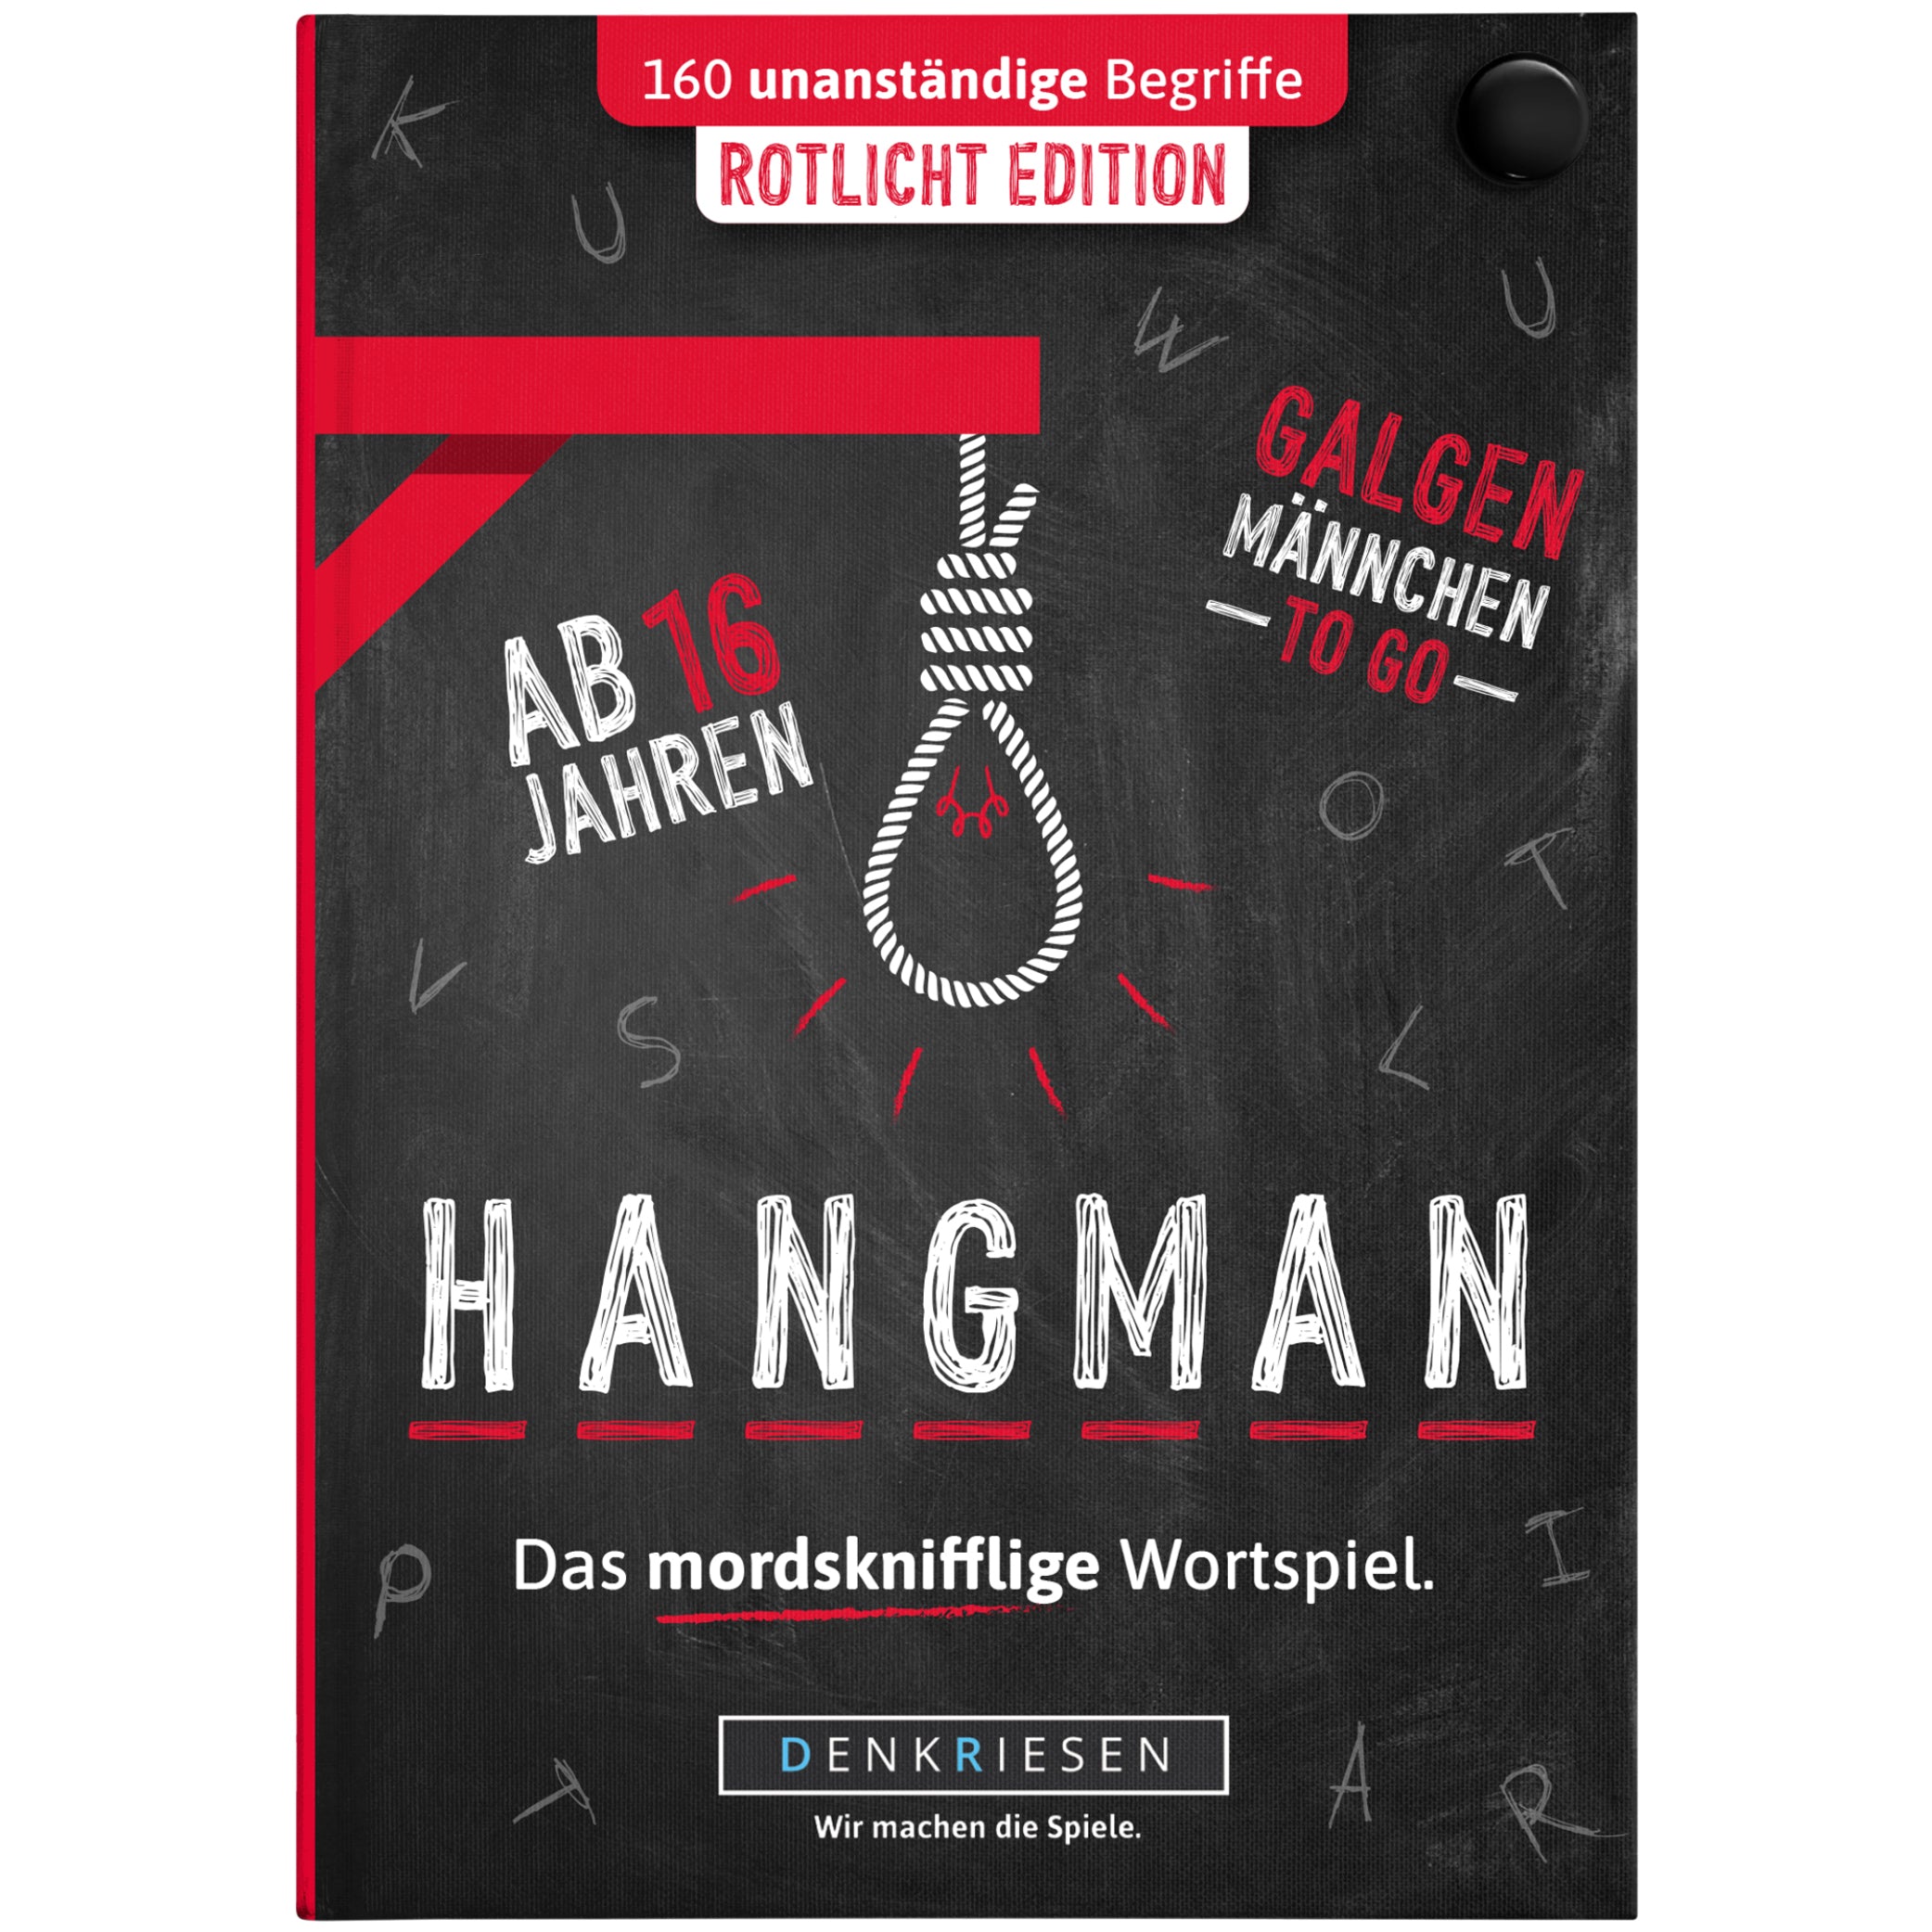 HANGMAN® | Rotlicht Edition – "Das mordsknifflige Wortspiel."